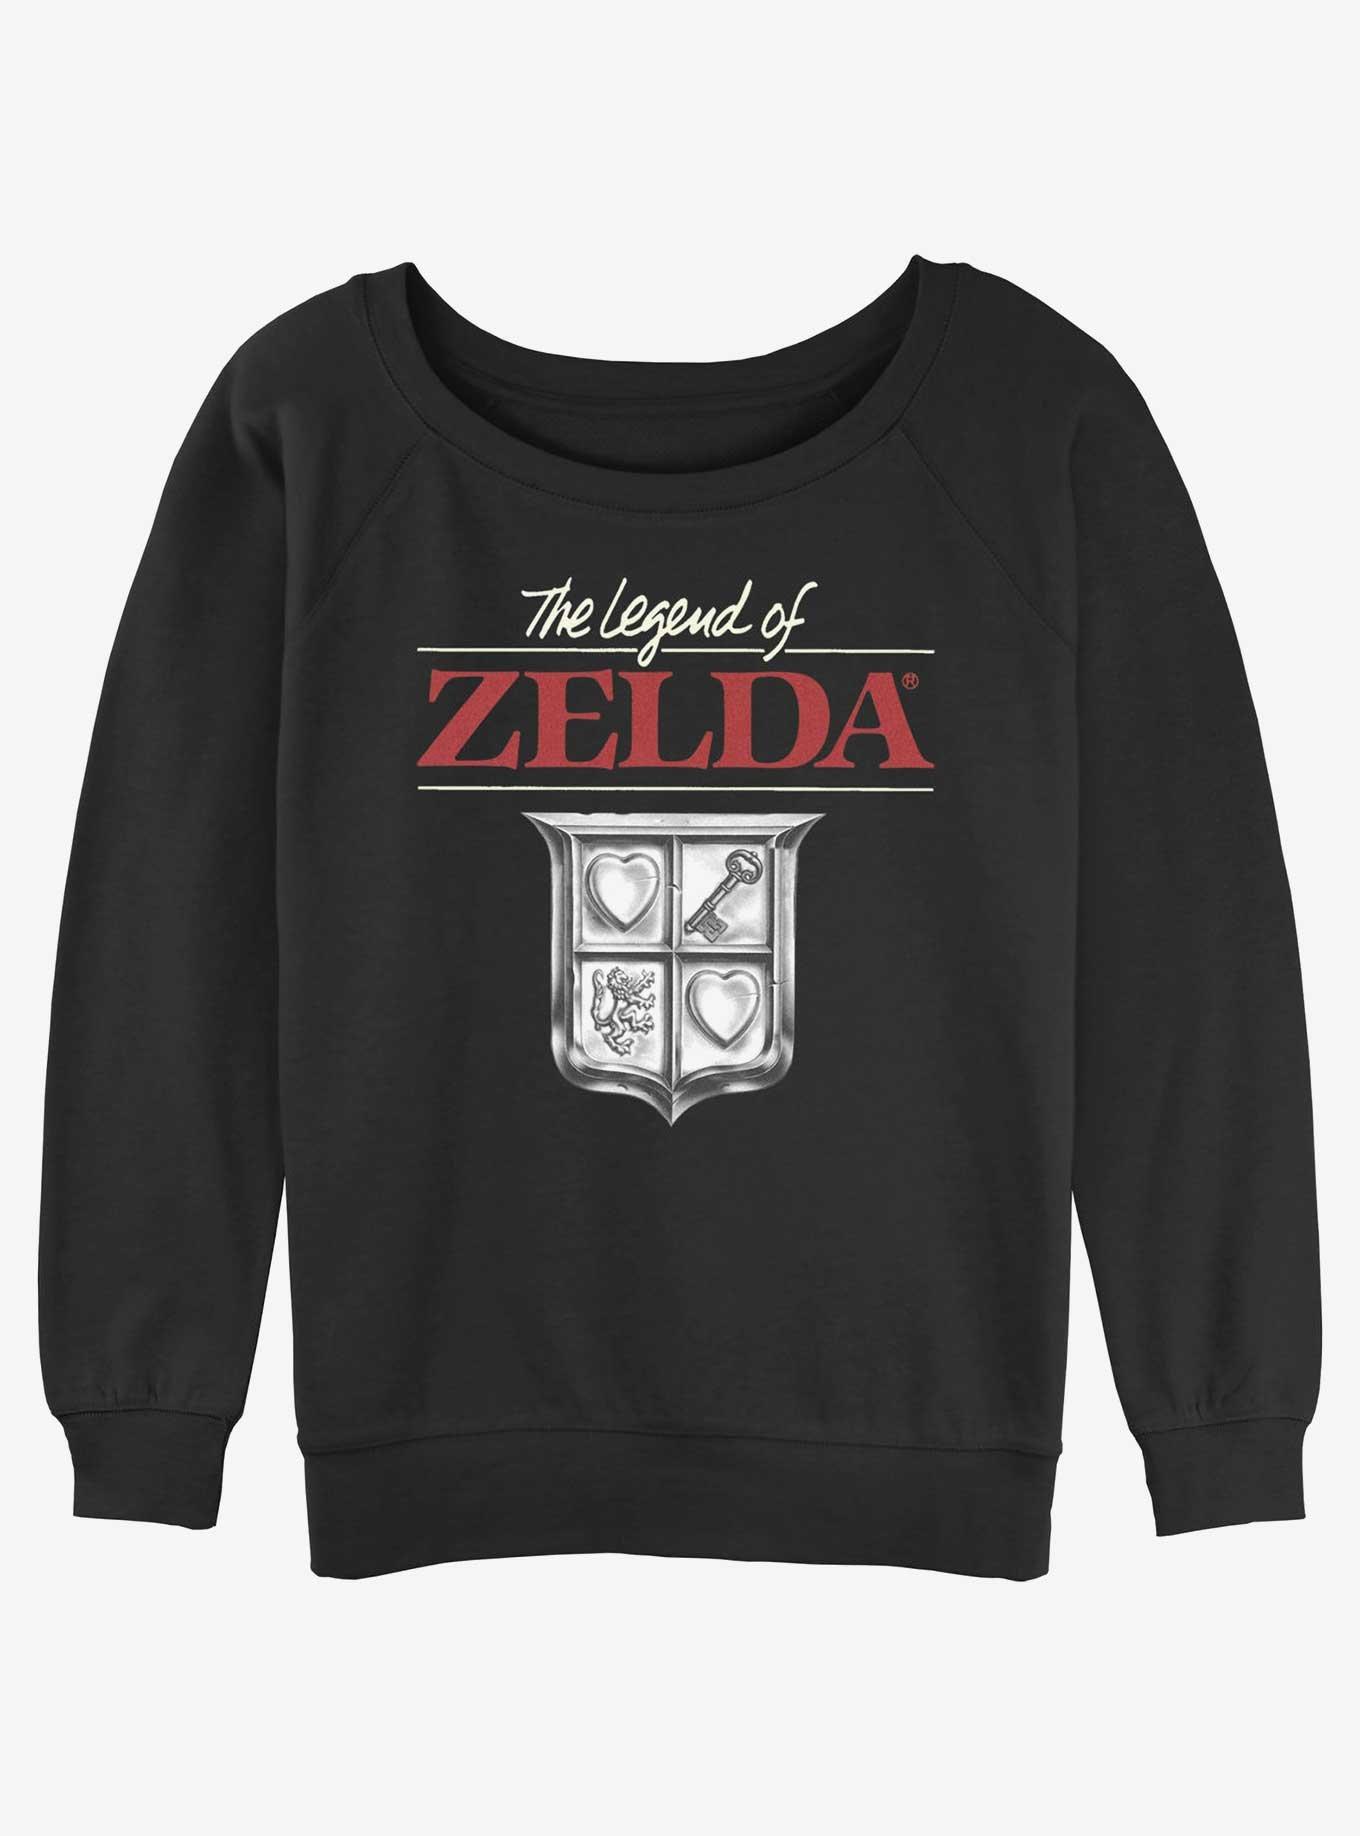 The Legend of Zelda Crest Girls Slouchy Sweatshirt